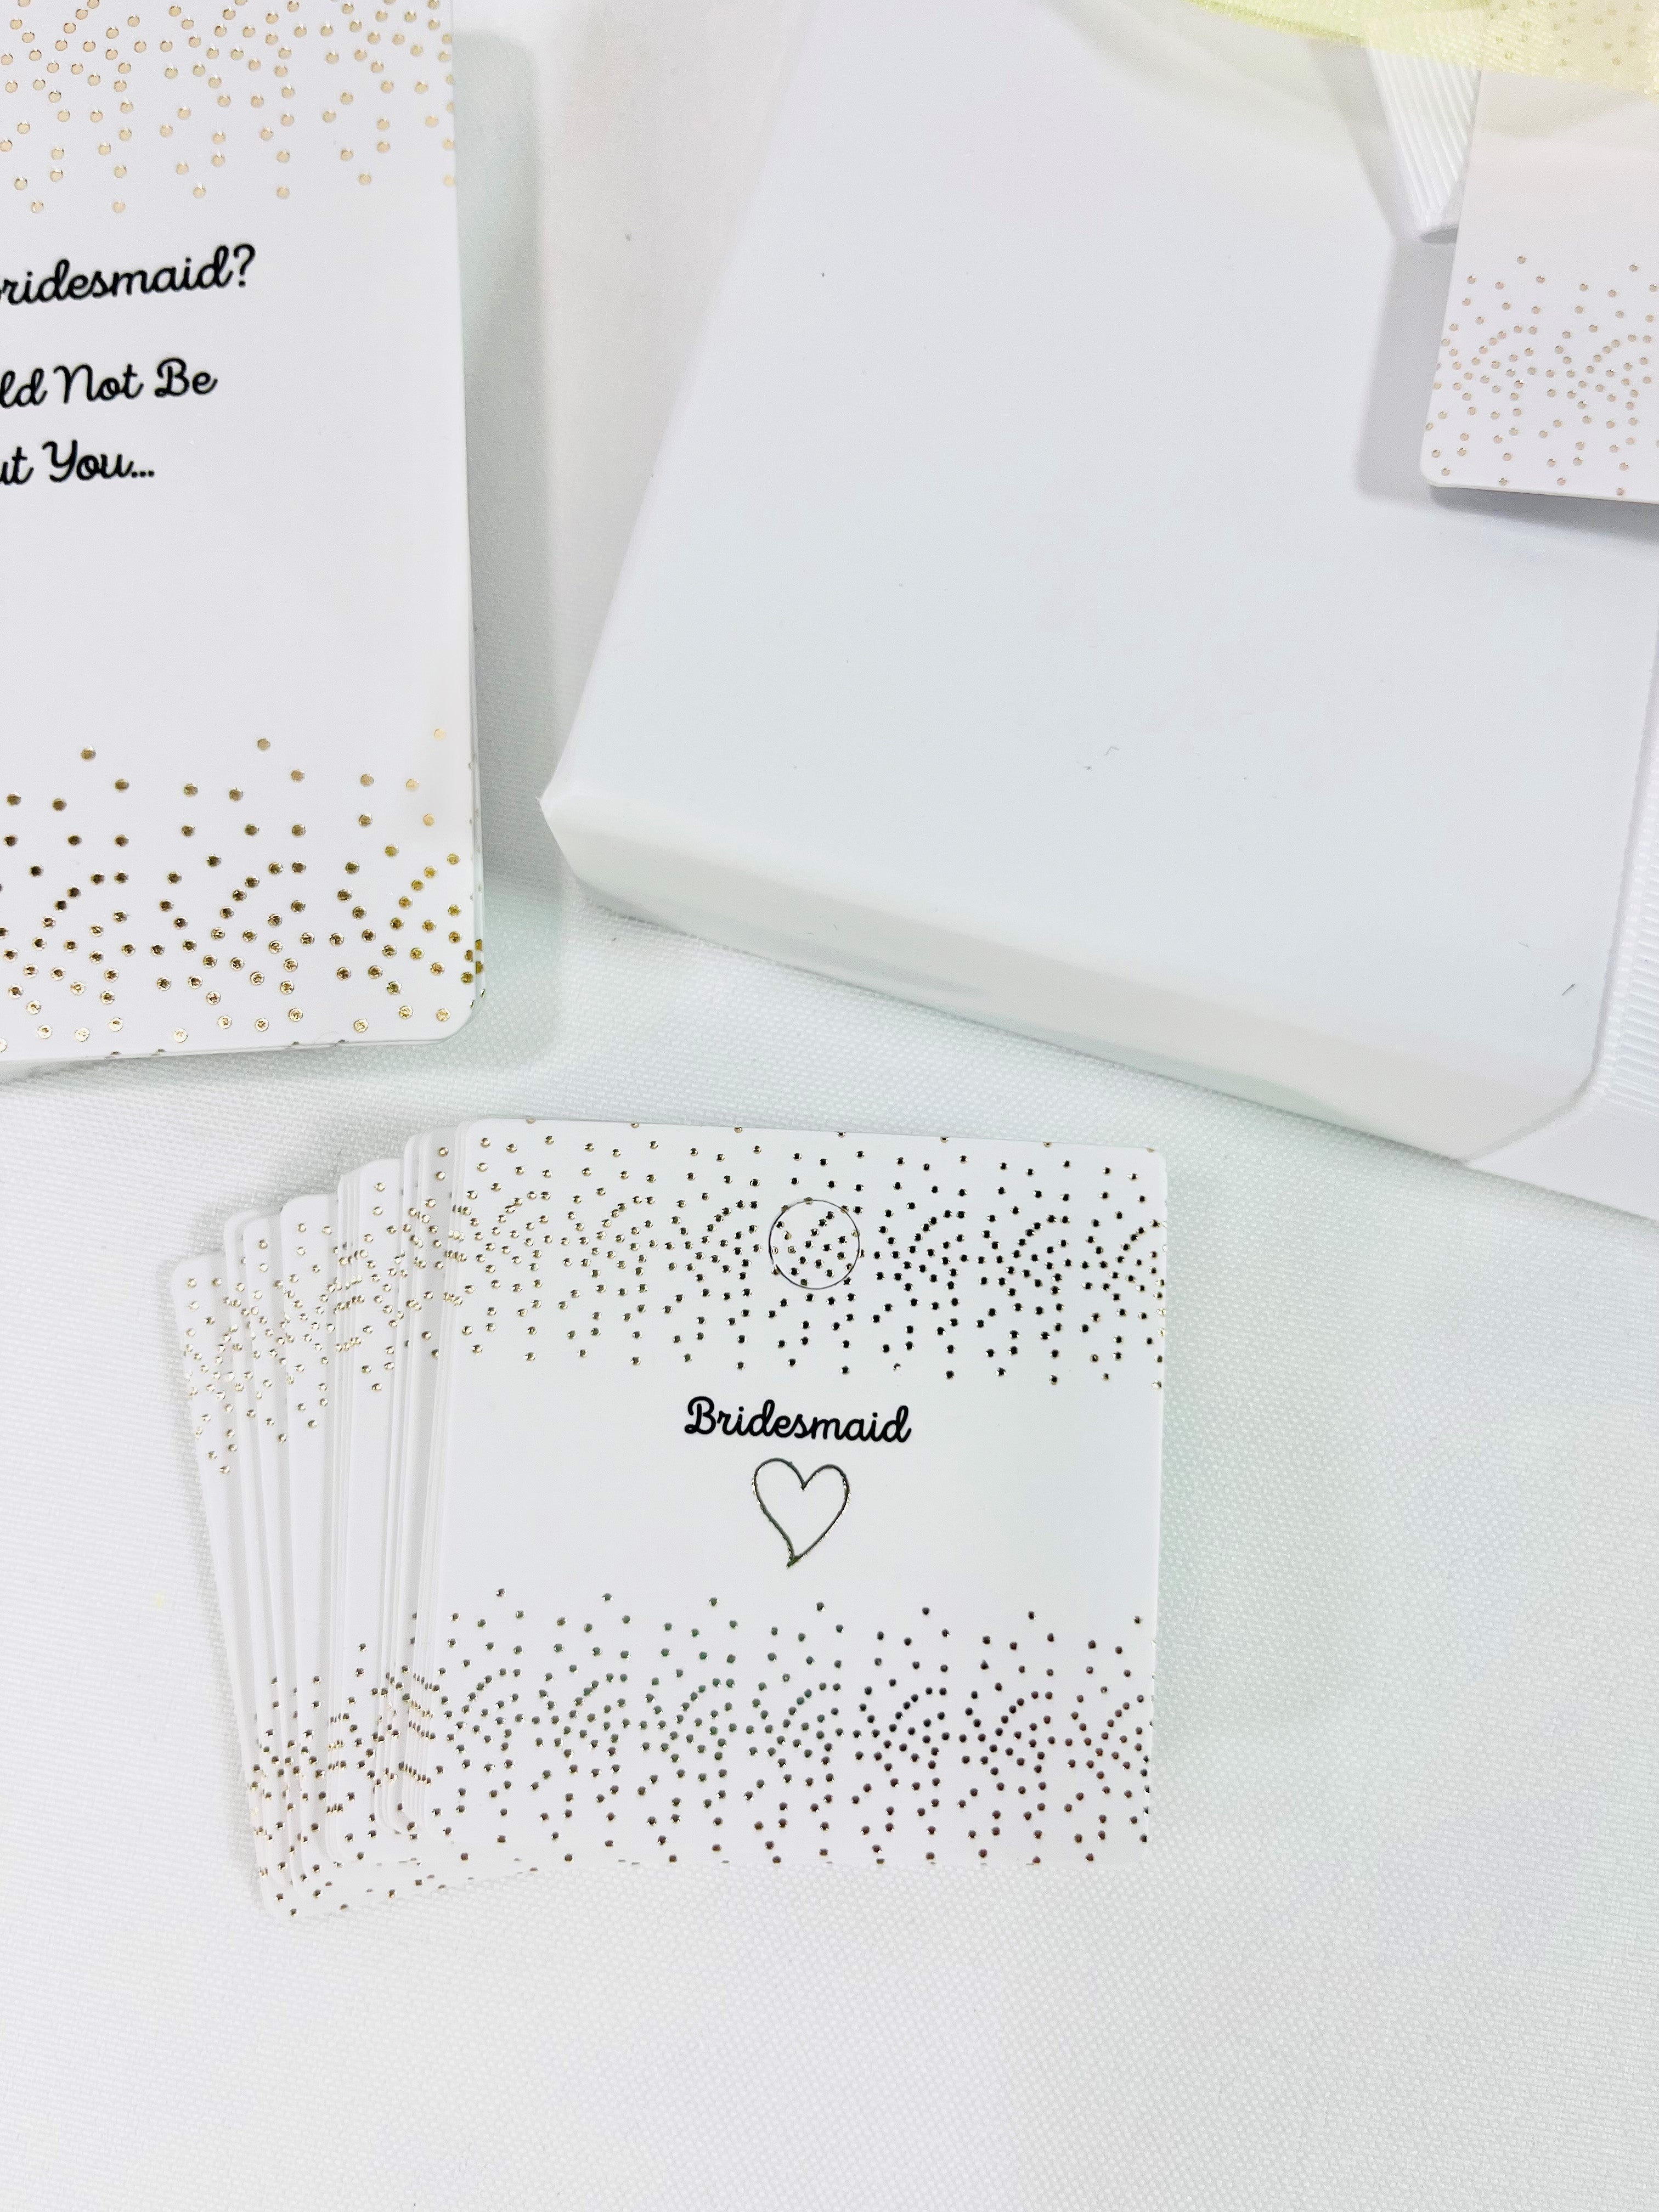 Bridesmaid Gift Tags & Bridesmaid Proposal Cards